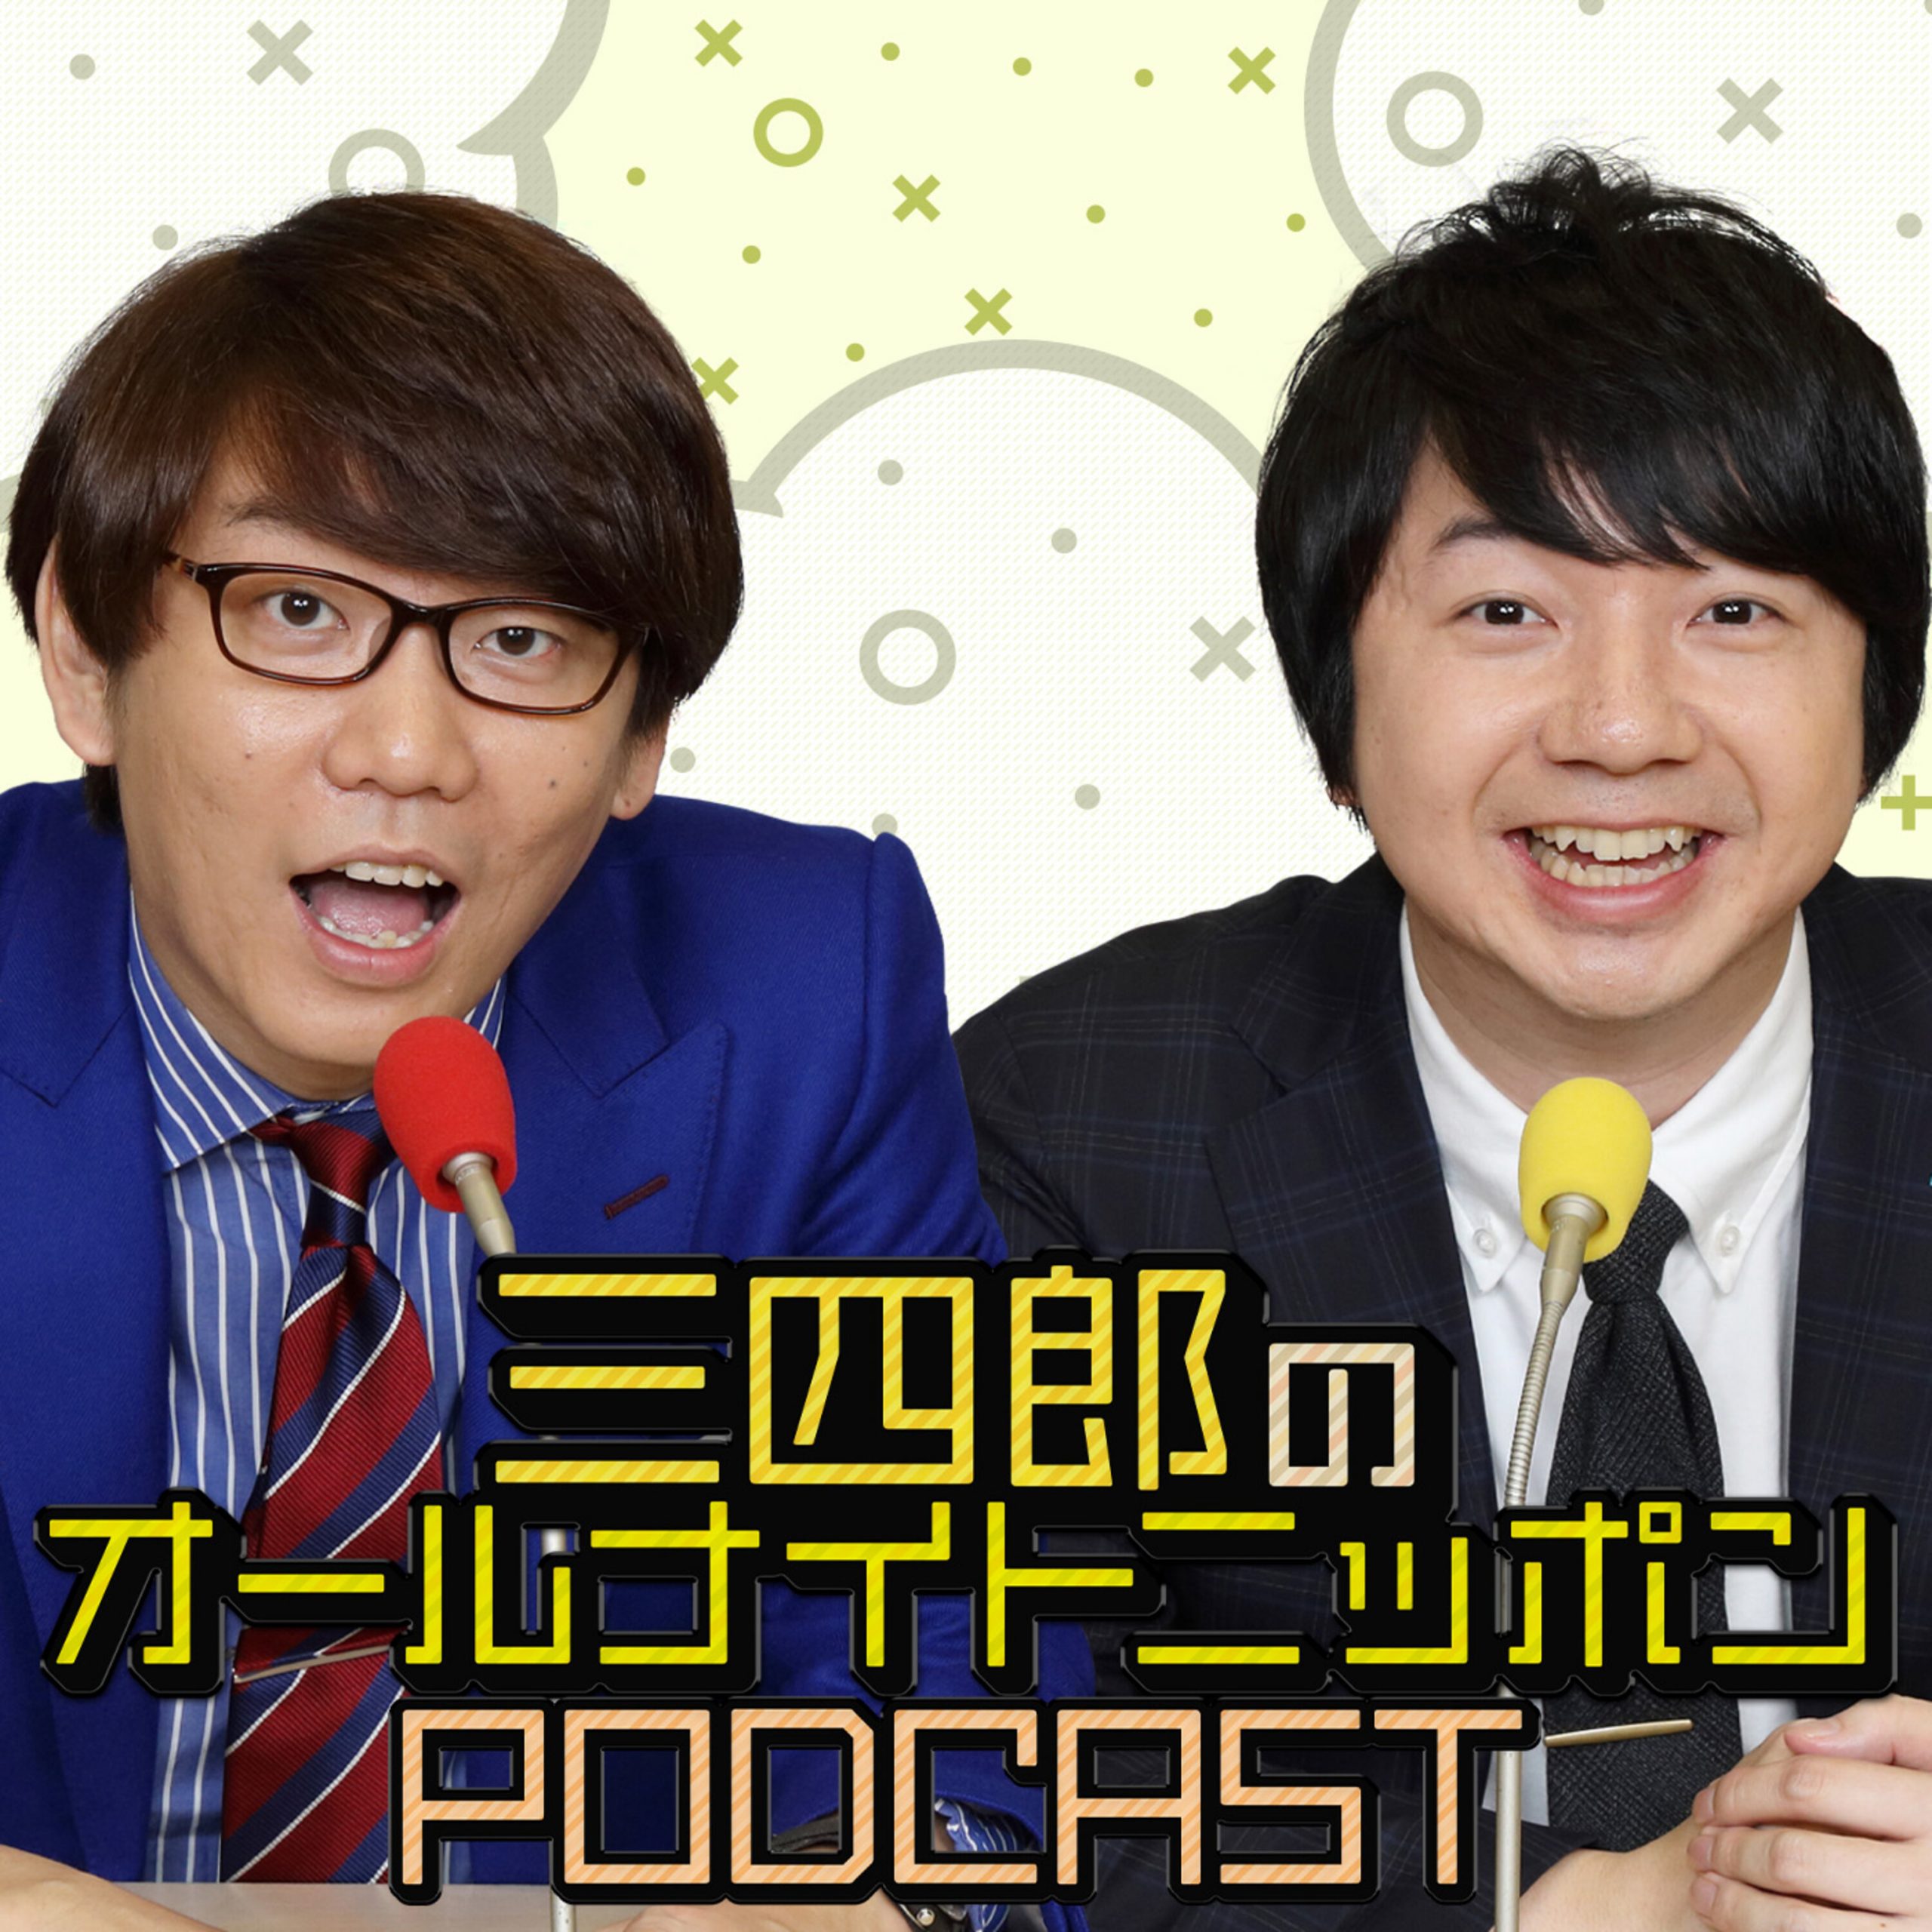 ニッポン放送 Podcast Station -ポッドキャストステーション-									ニッポン放送 Podcast Station -ポッドキャストステーション-